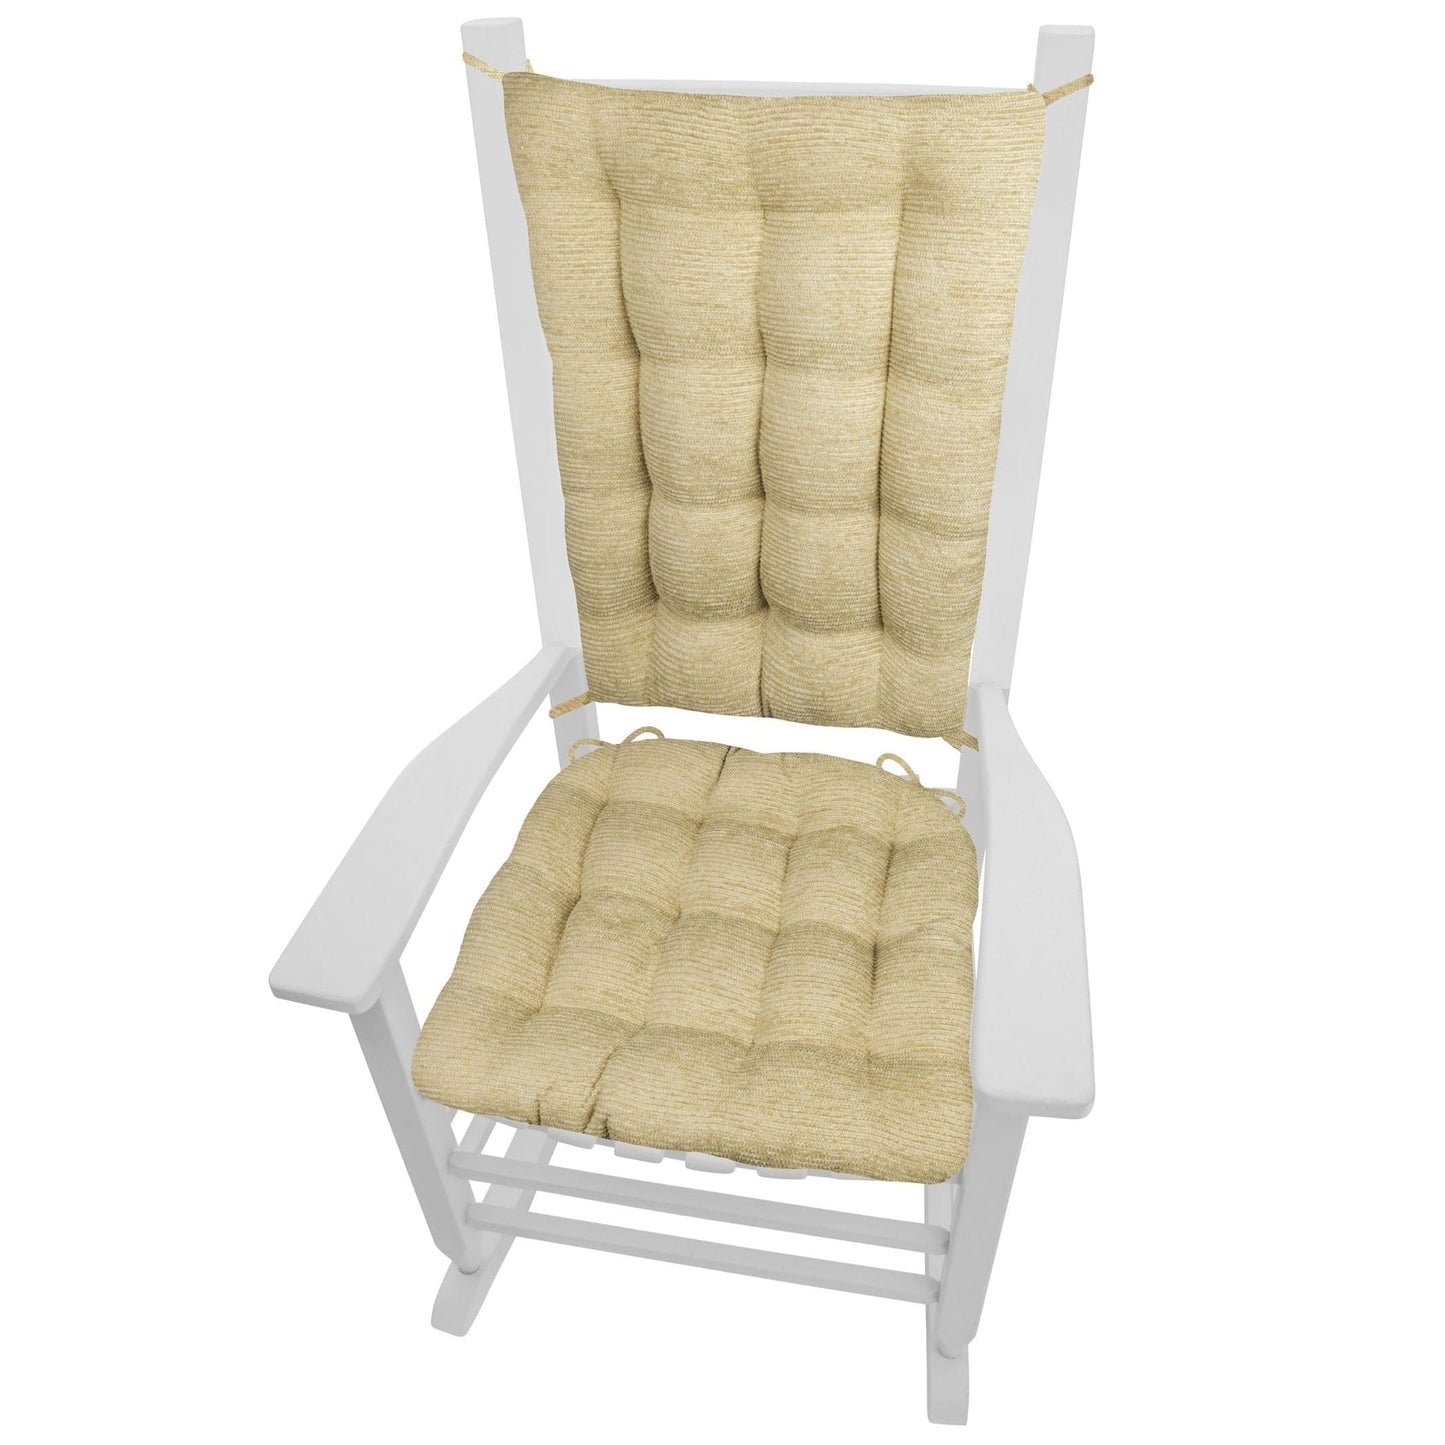 Tight Race Chenille Tan Rocking Chair Cushions - Barnett Home Decor - Beige Tan - Neutral